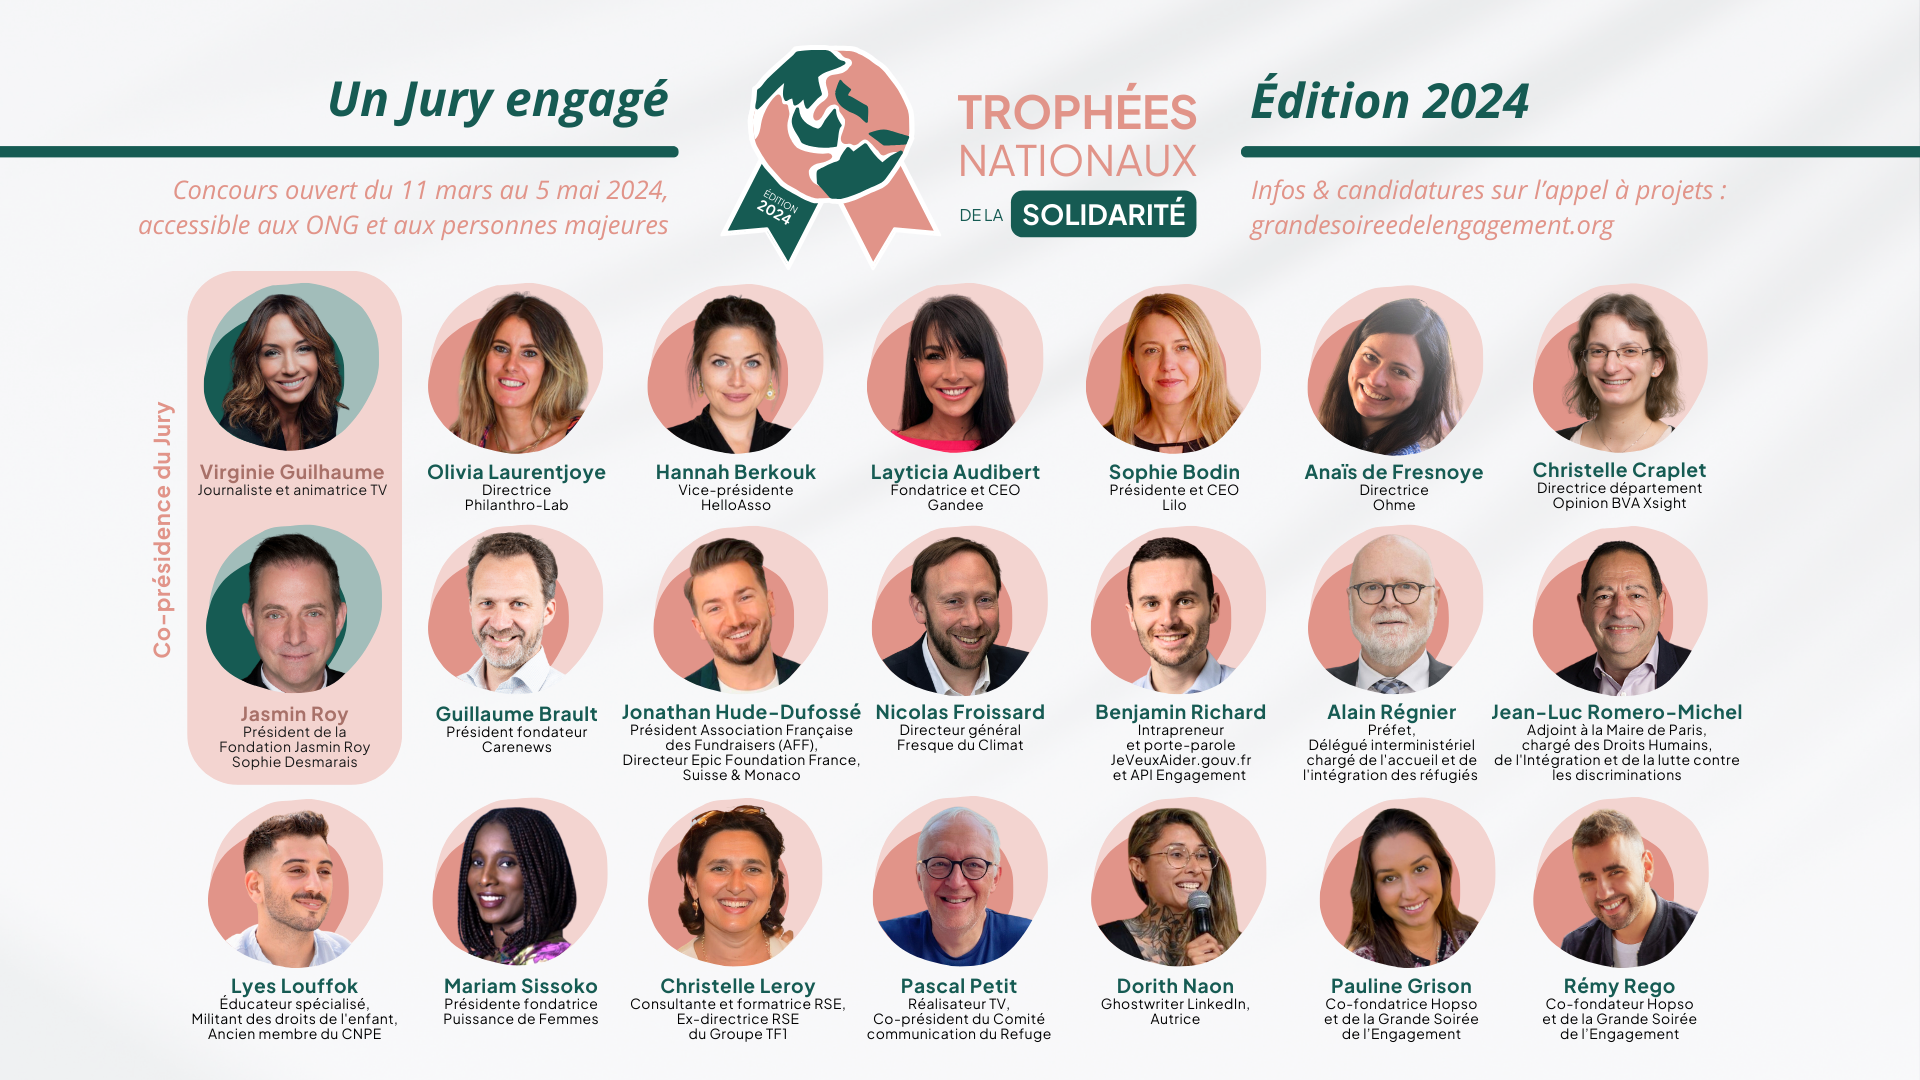 Jury des Trophées Nationaux de la Solidarité 2024 par Hopso - 5 prix pour récompenser l'engagement et l'innovation - Crédit photo : Hopso